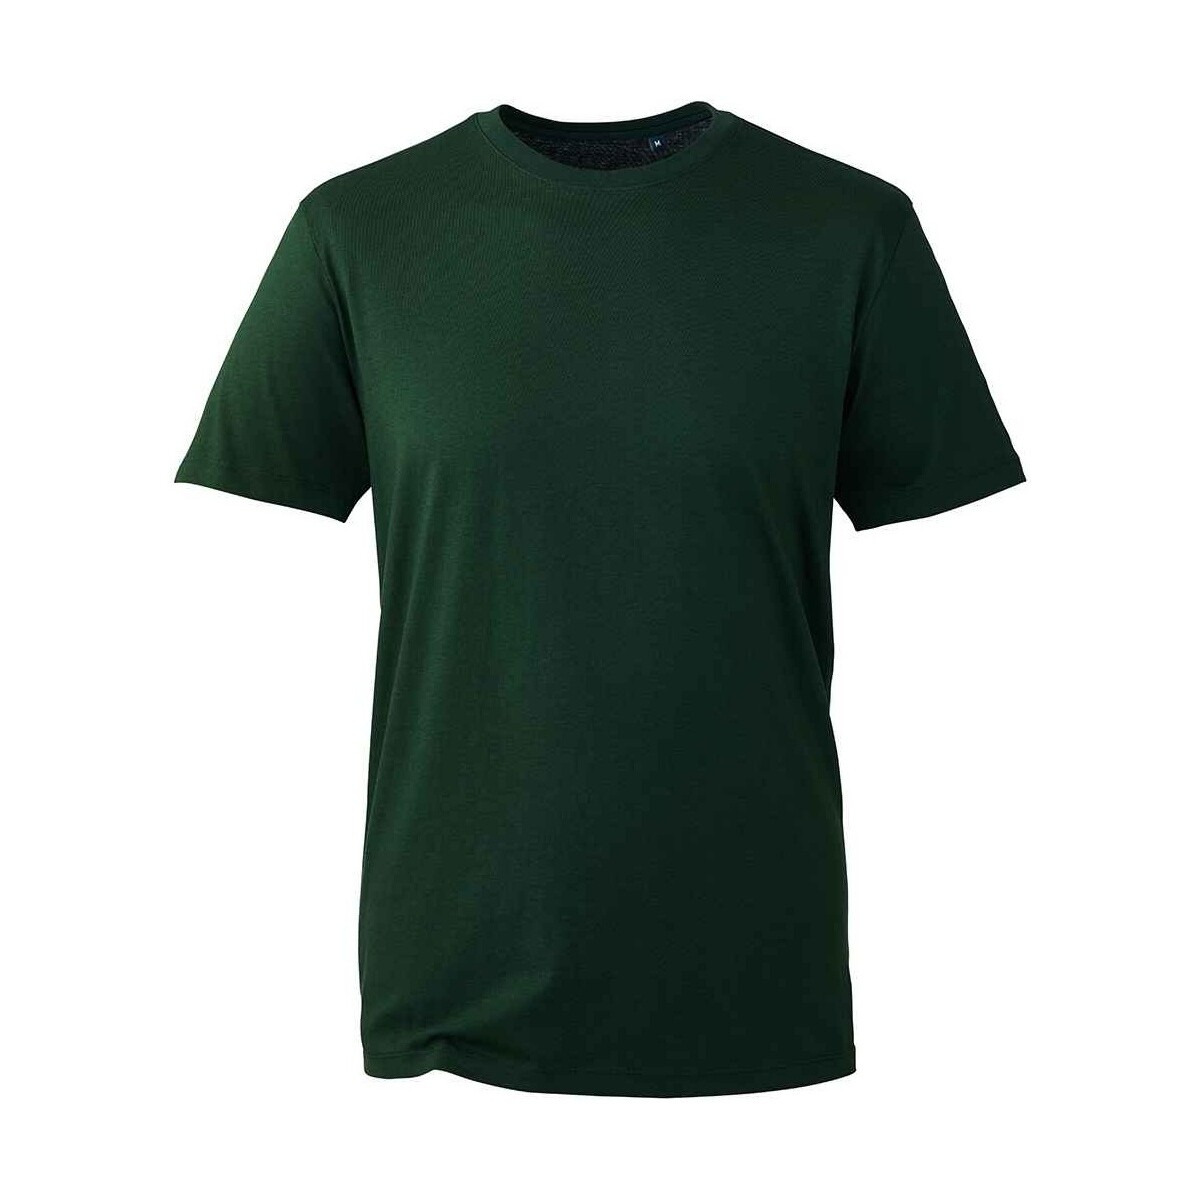 Vêtements Homme T-shirts manches longues Anthem AM10 Vert